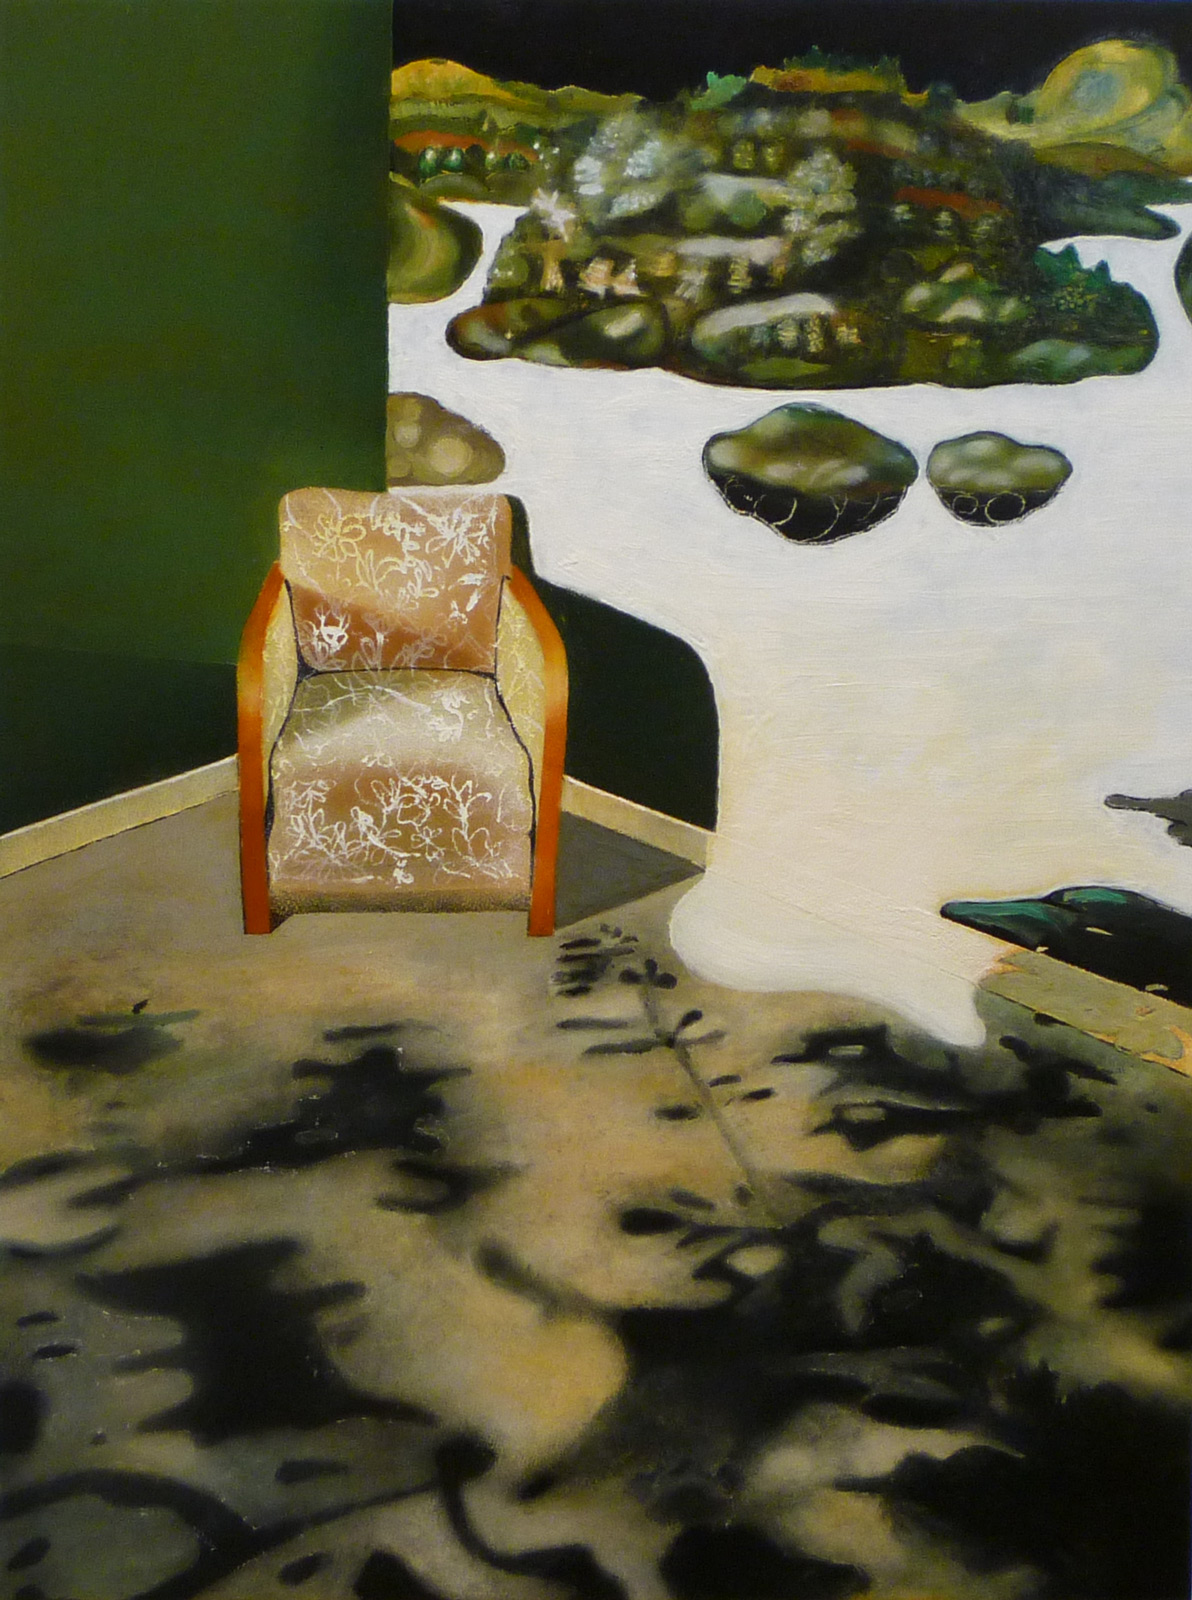 Lisa D Manner, "Nook", 2015, oil on panel, 40 x 30 cm